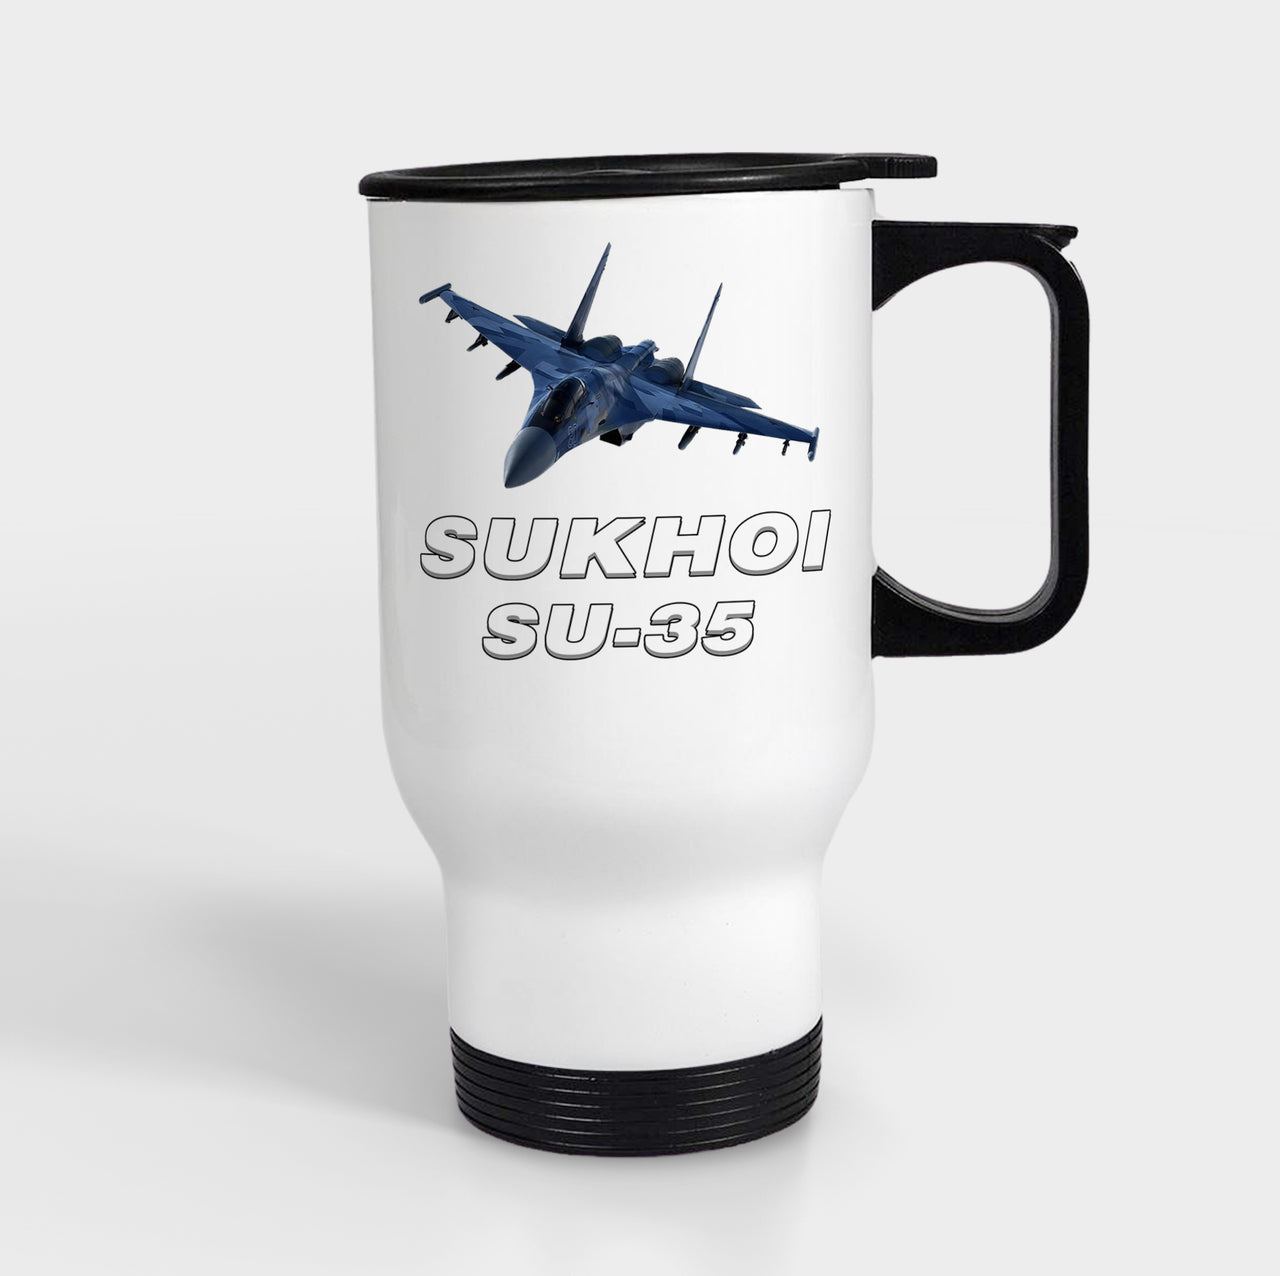 The Sukhoi SU-35 Designed Travel Mugs (With Holder)